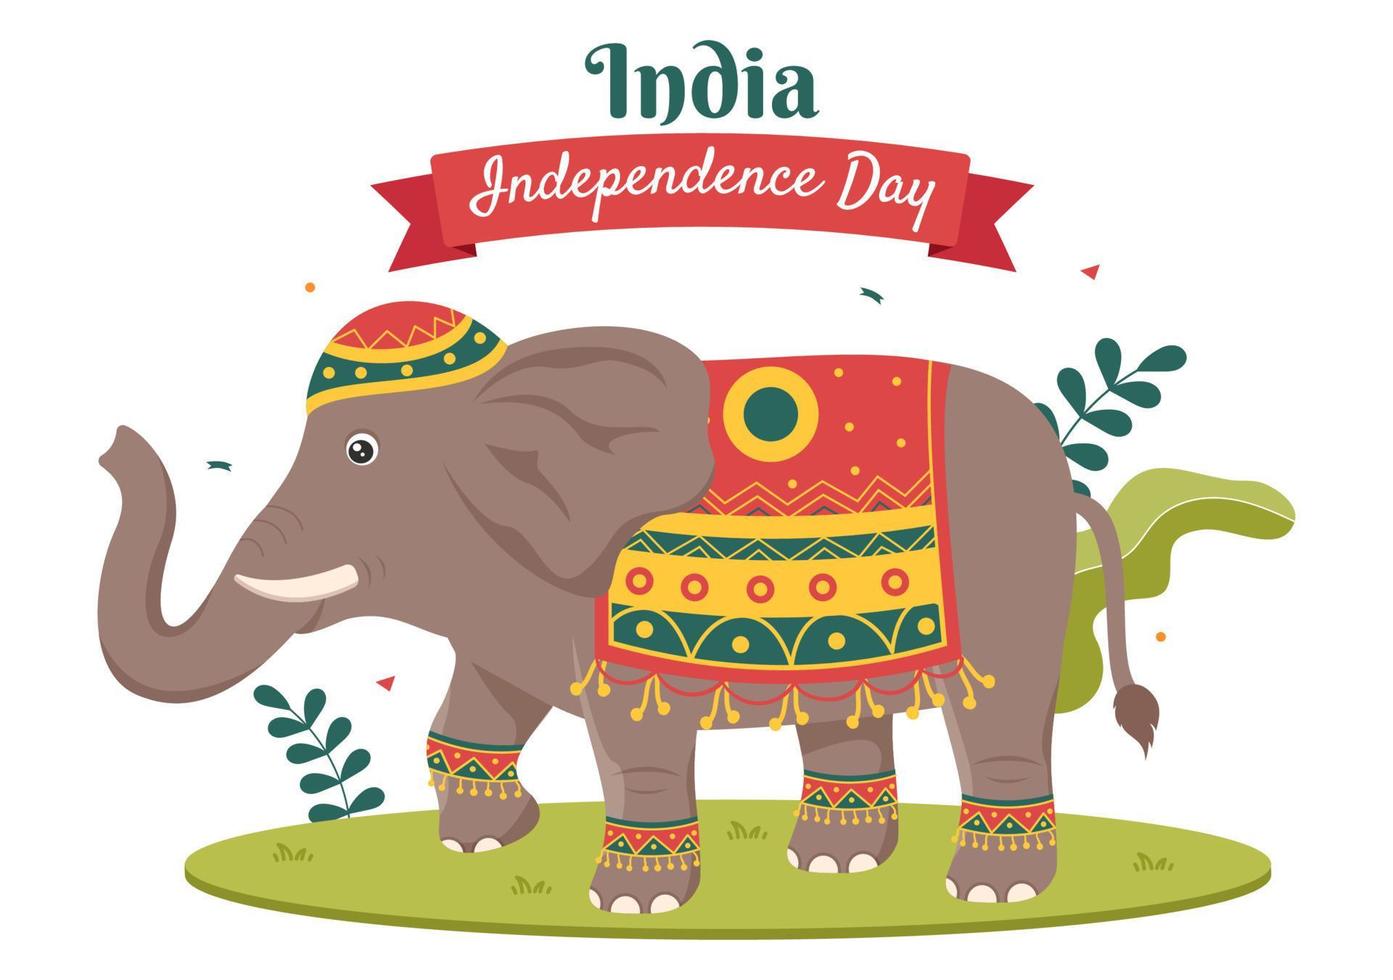 bonne fête de l'indépendance indienne qui est célébrée chaque août avec des drapeaux, des personnages et des roues ashoka dans l'illustration de style dessin animé vecteur